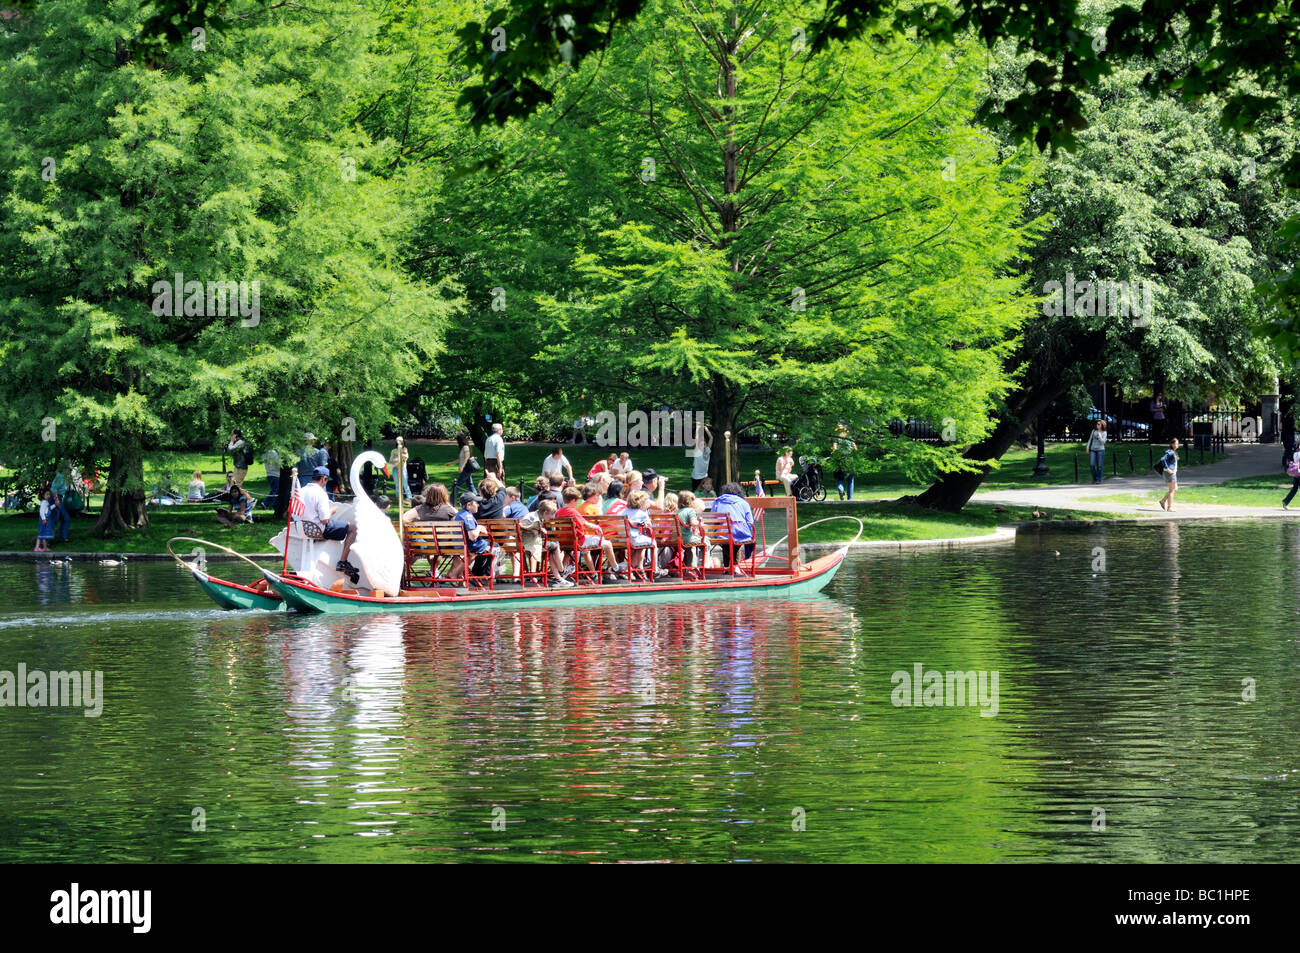 A Swan boat  ride in the Boston Public Garden's lagoon located adjacent to Boston Common, Boston MA Stock Photo